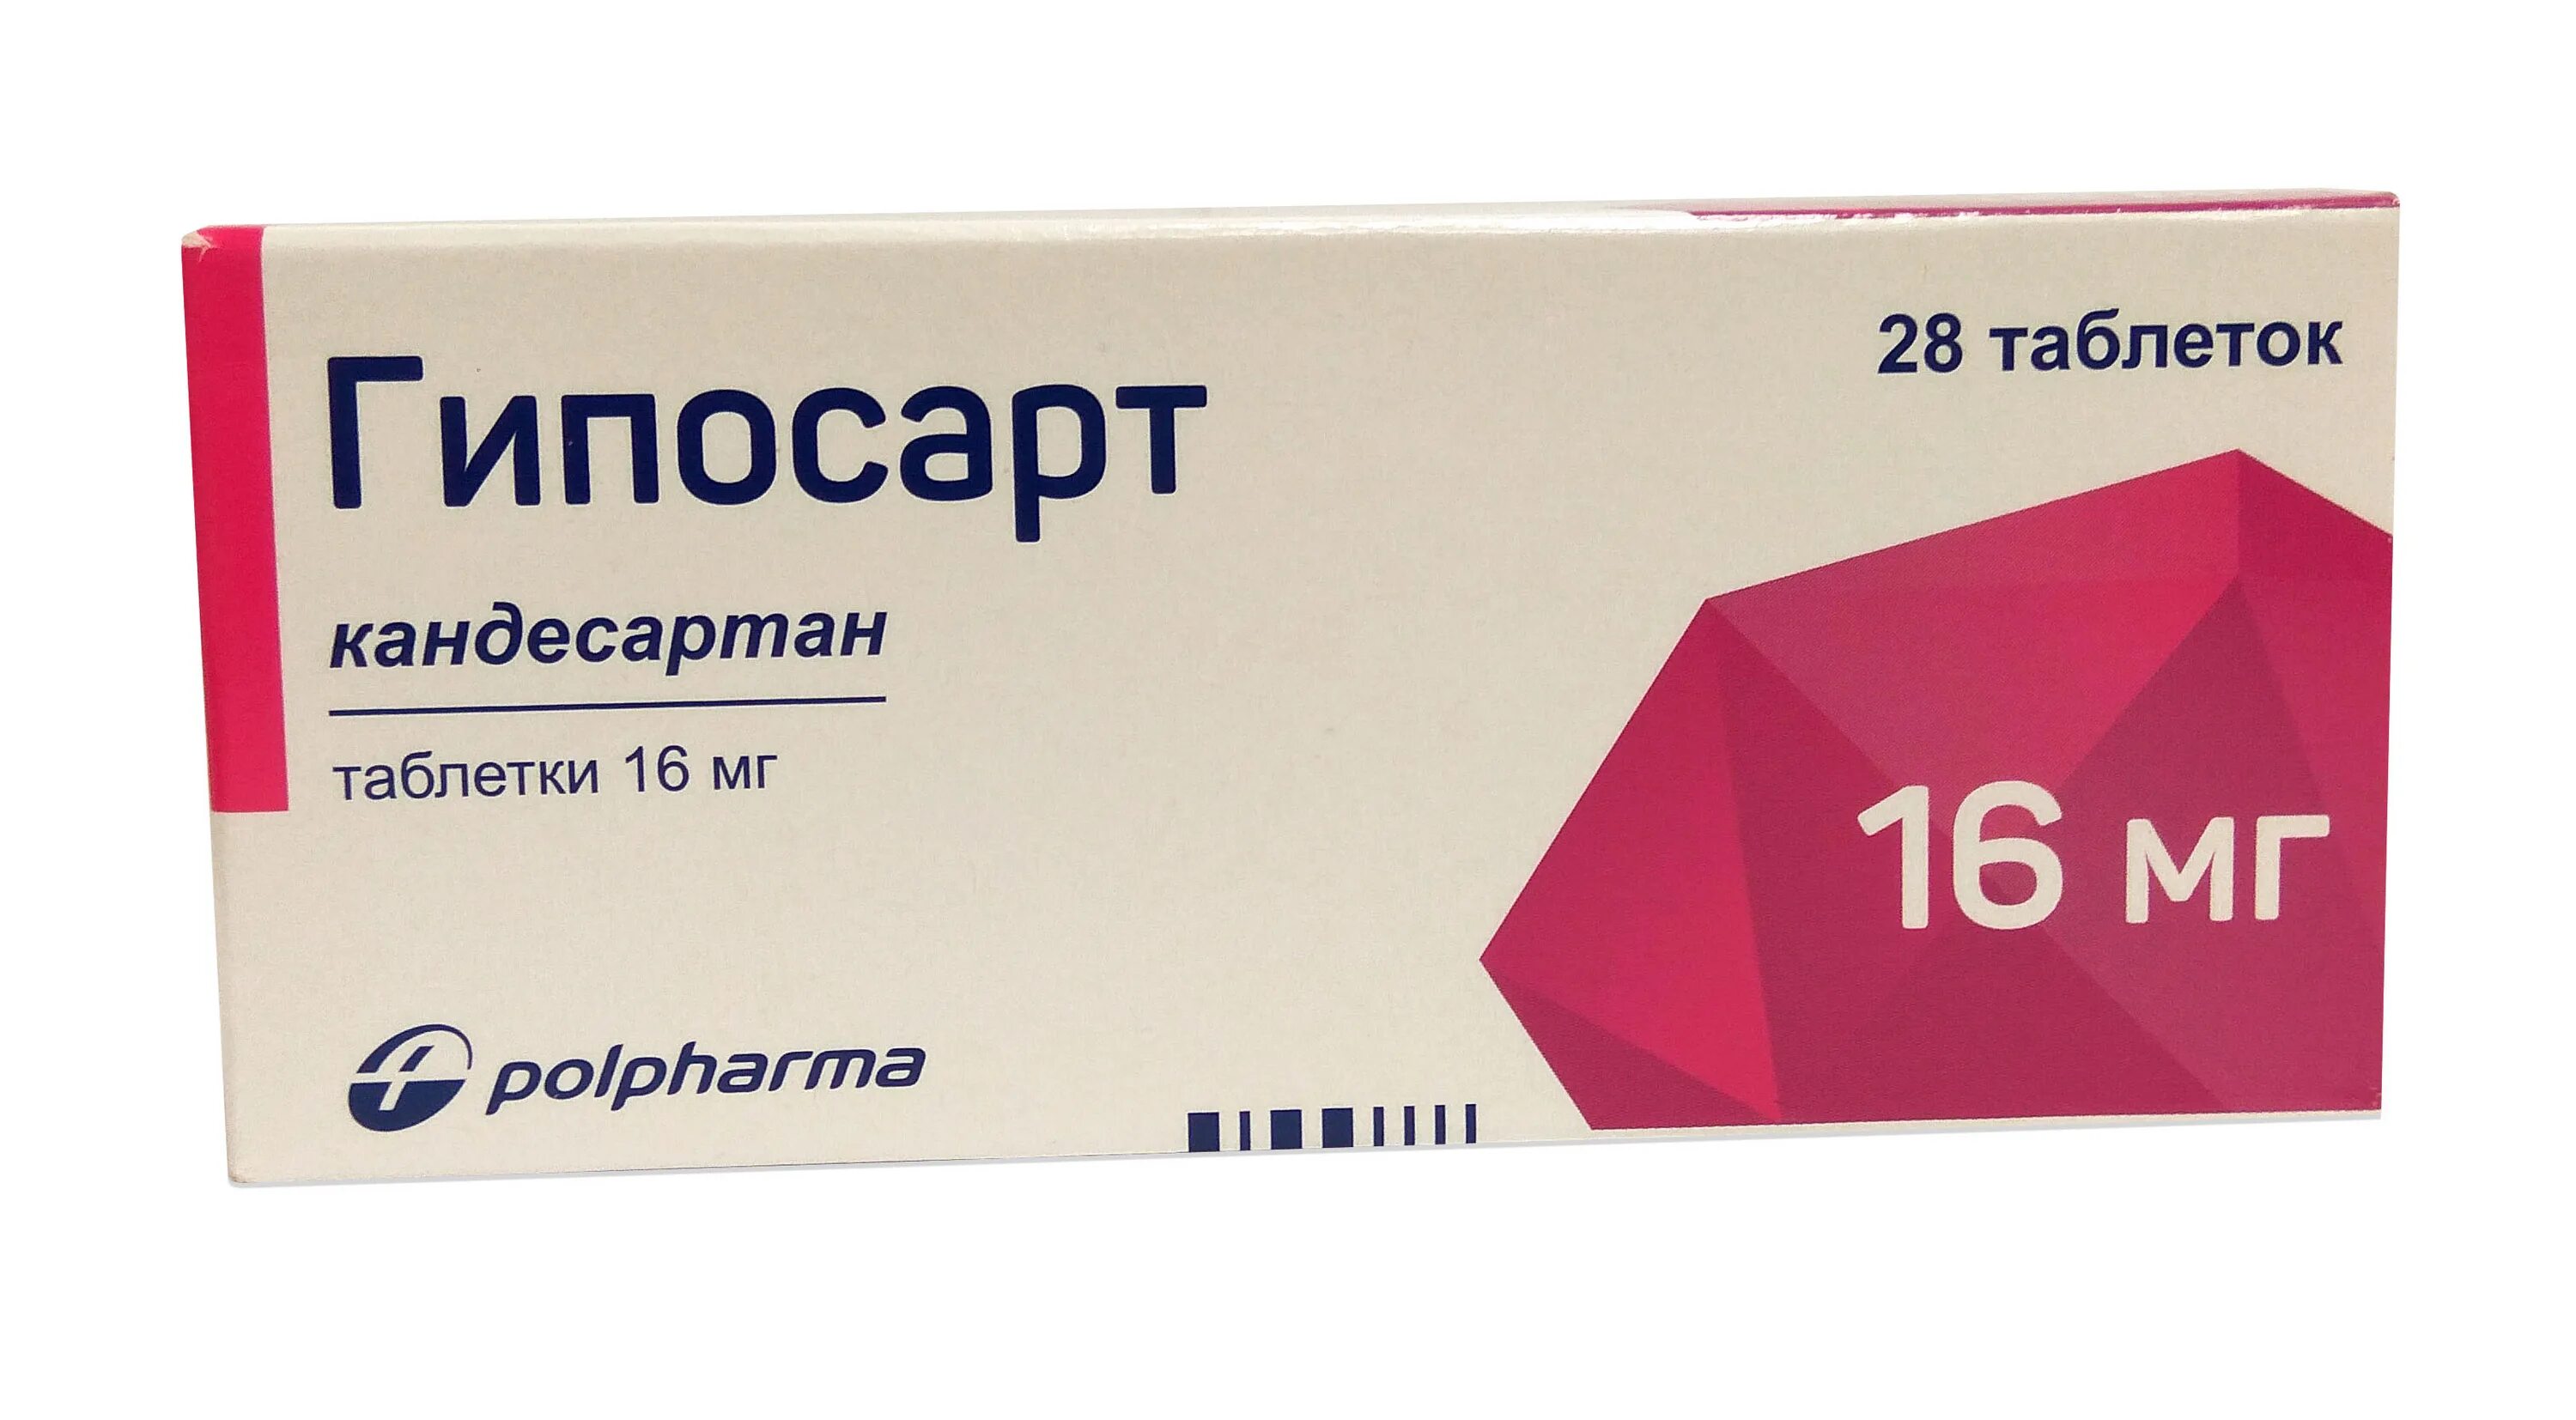 Гипосарт 16 мг купить